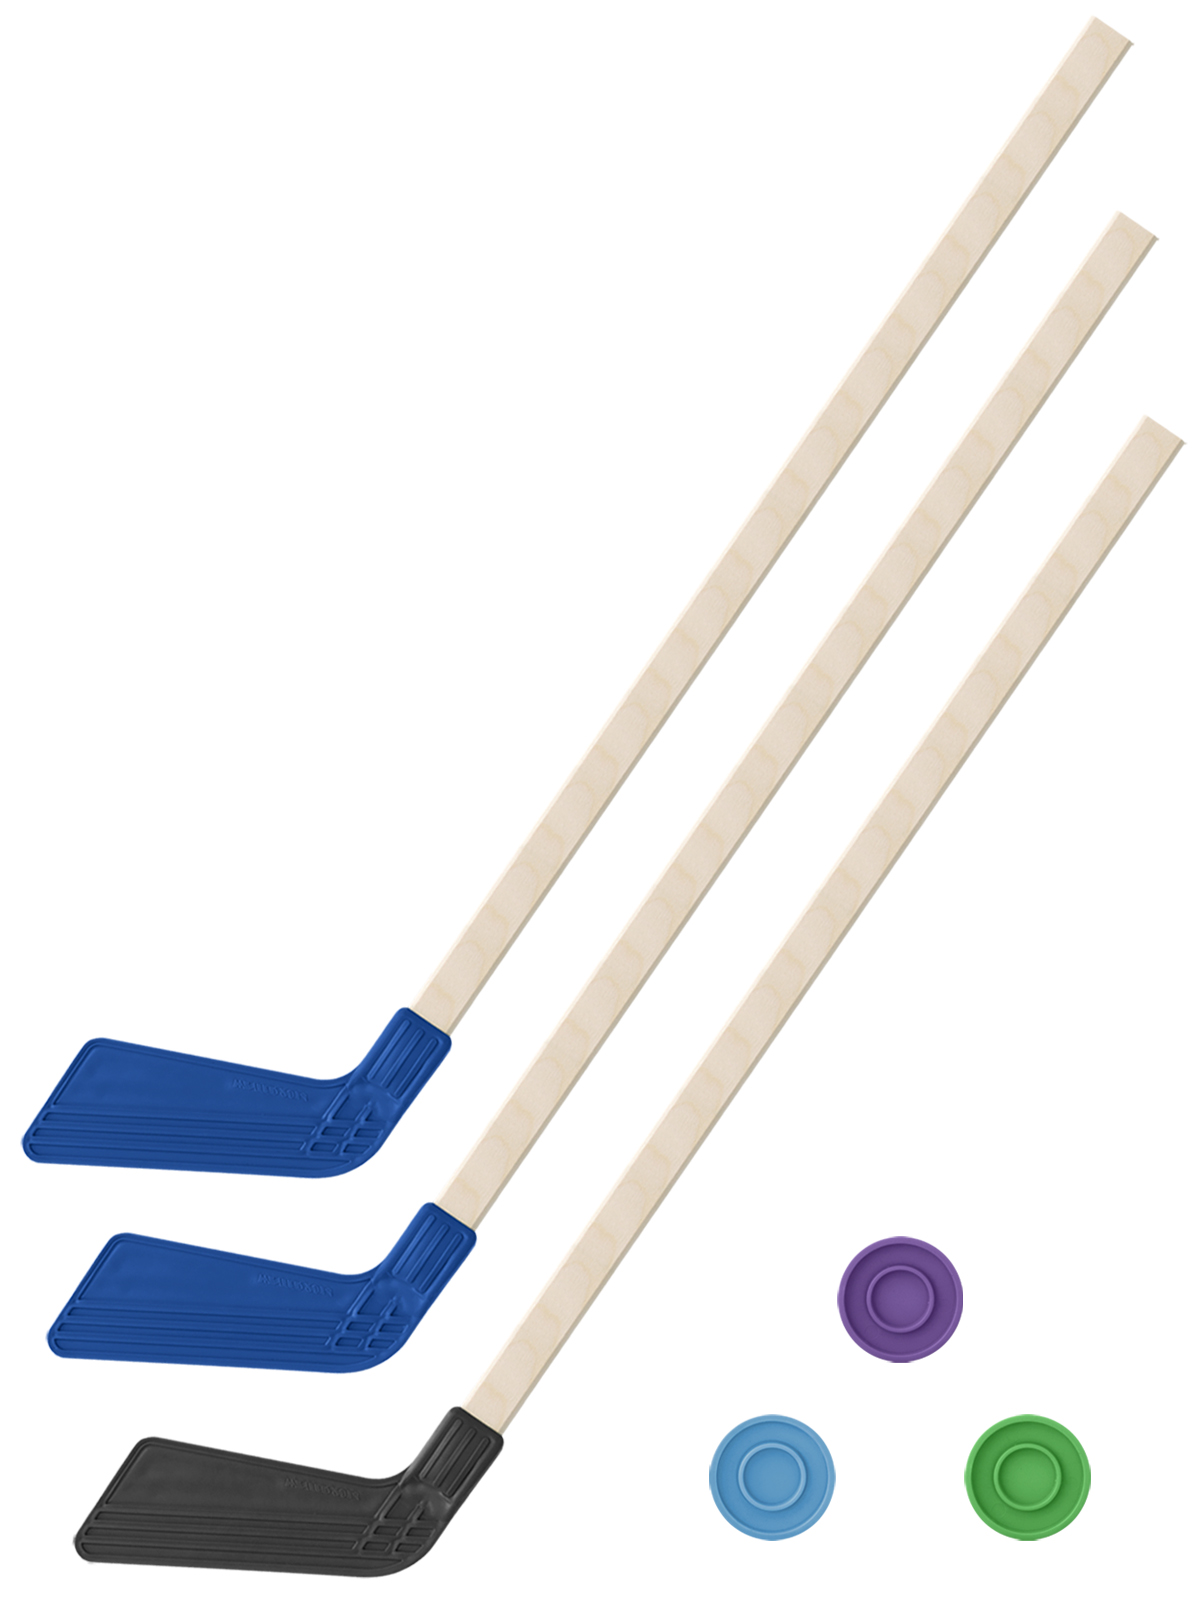 фото Хоккейный набор 3 в 1 клюшки хоккейных 80 см. (2 синих, 1 черная) + 3 шайбы задира-плюс